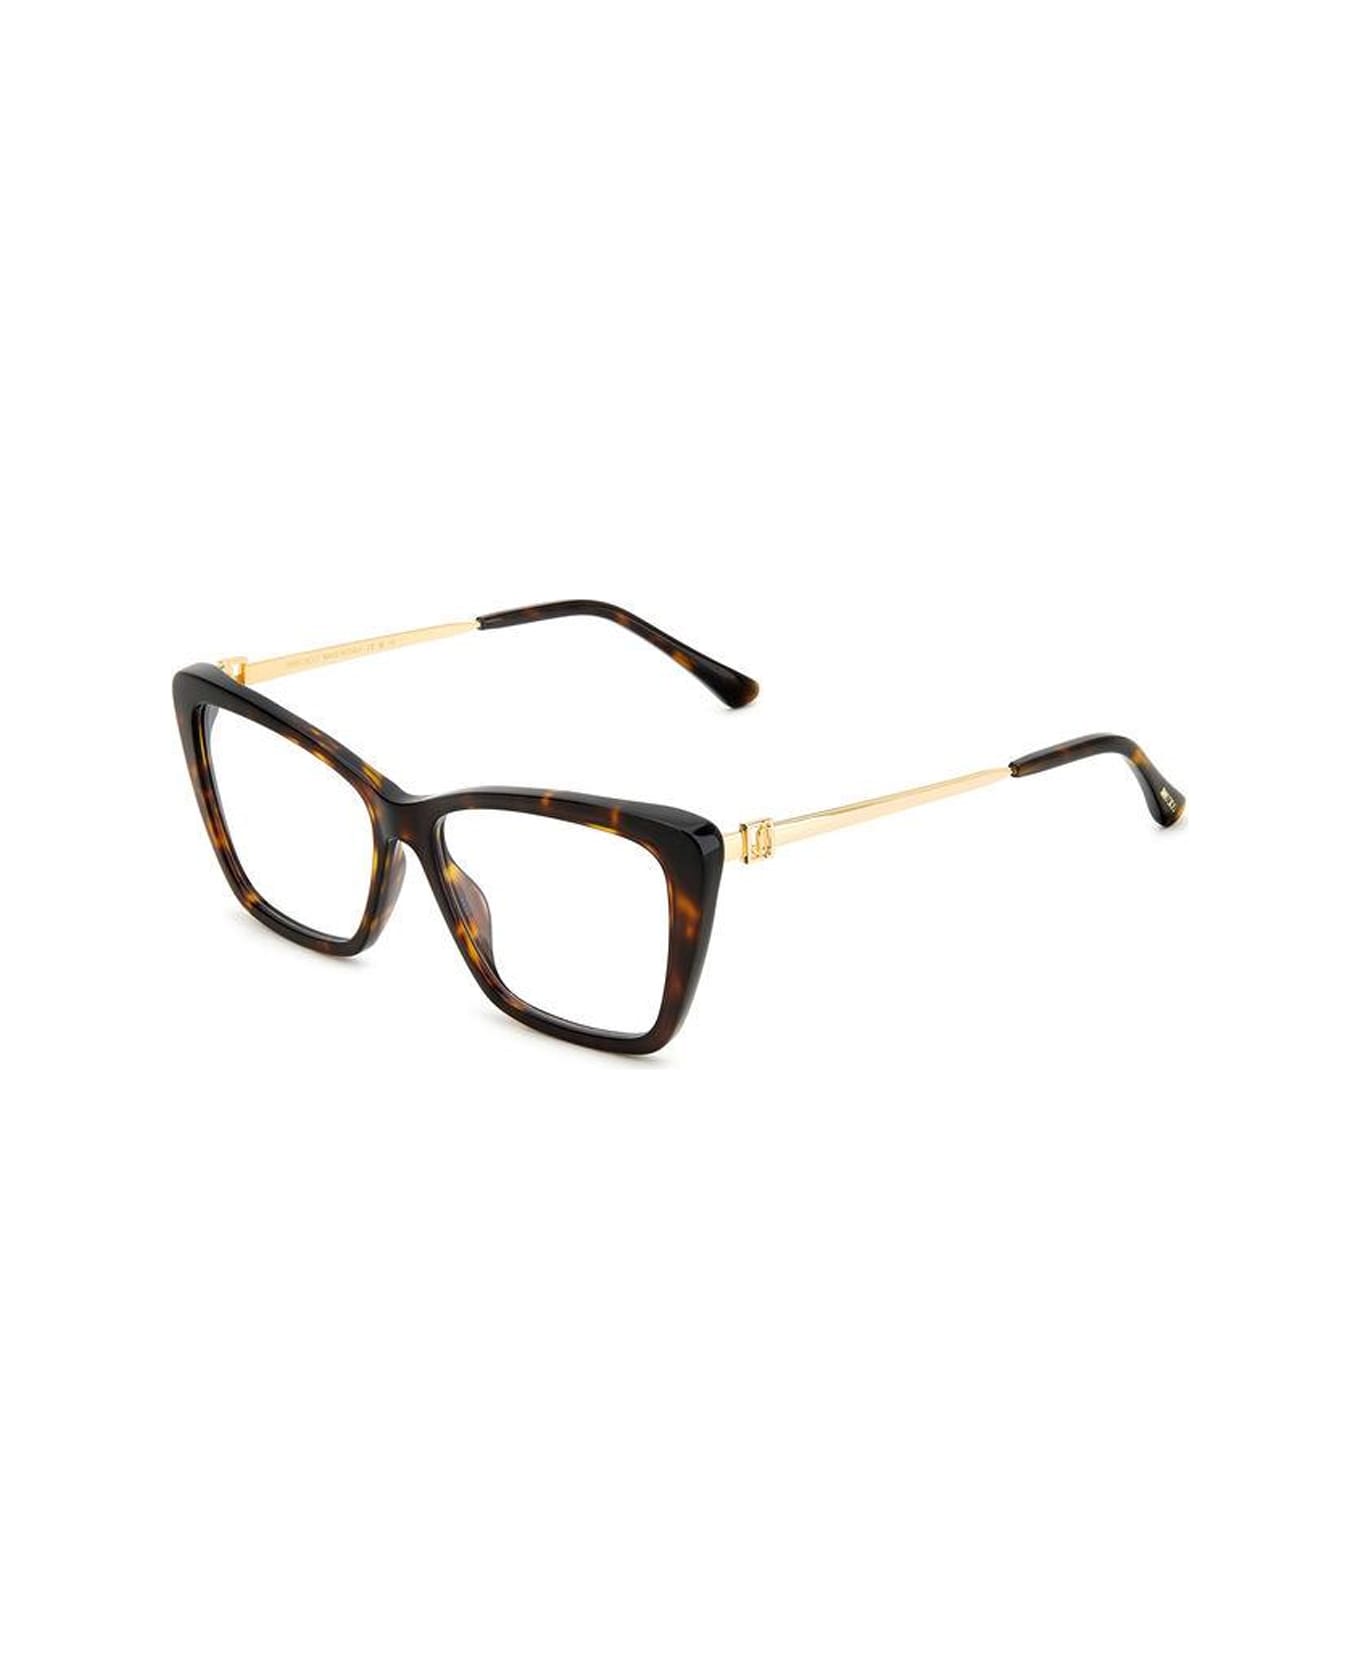 Jimmy Choo Eyewear Jc375 086/15 Glasses - Marrone